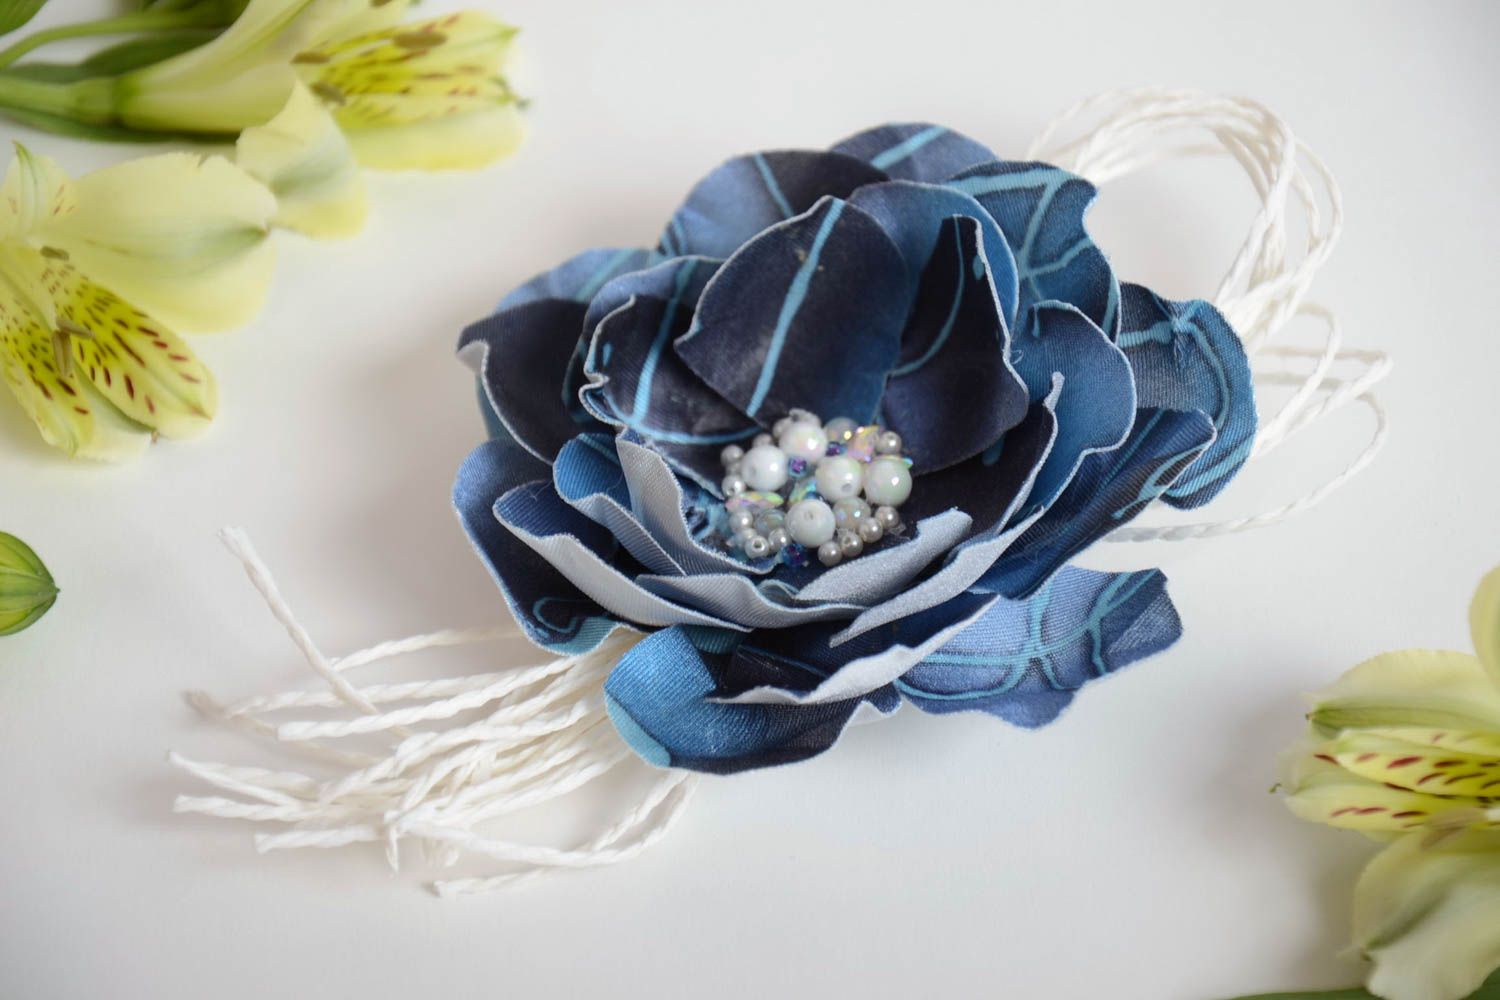 Брошь цветок из ткани синяя с бусинами красивая крупная стильная ручной работы фото 1